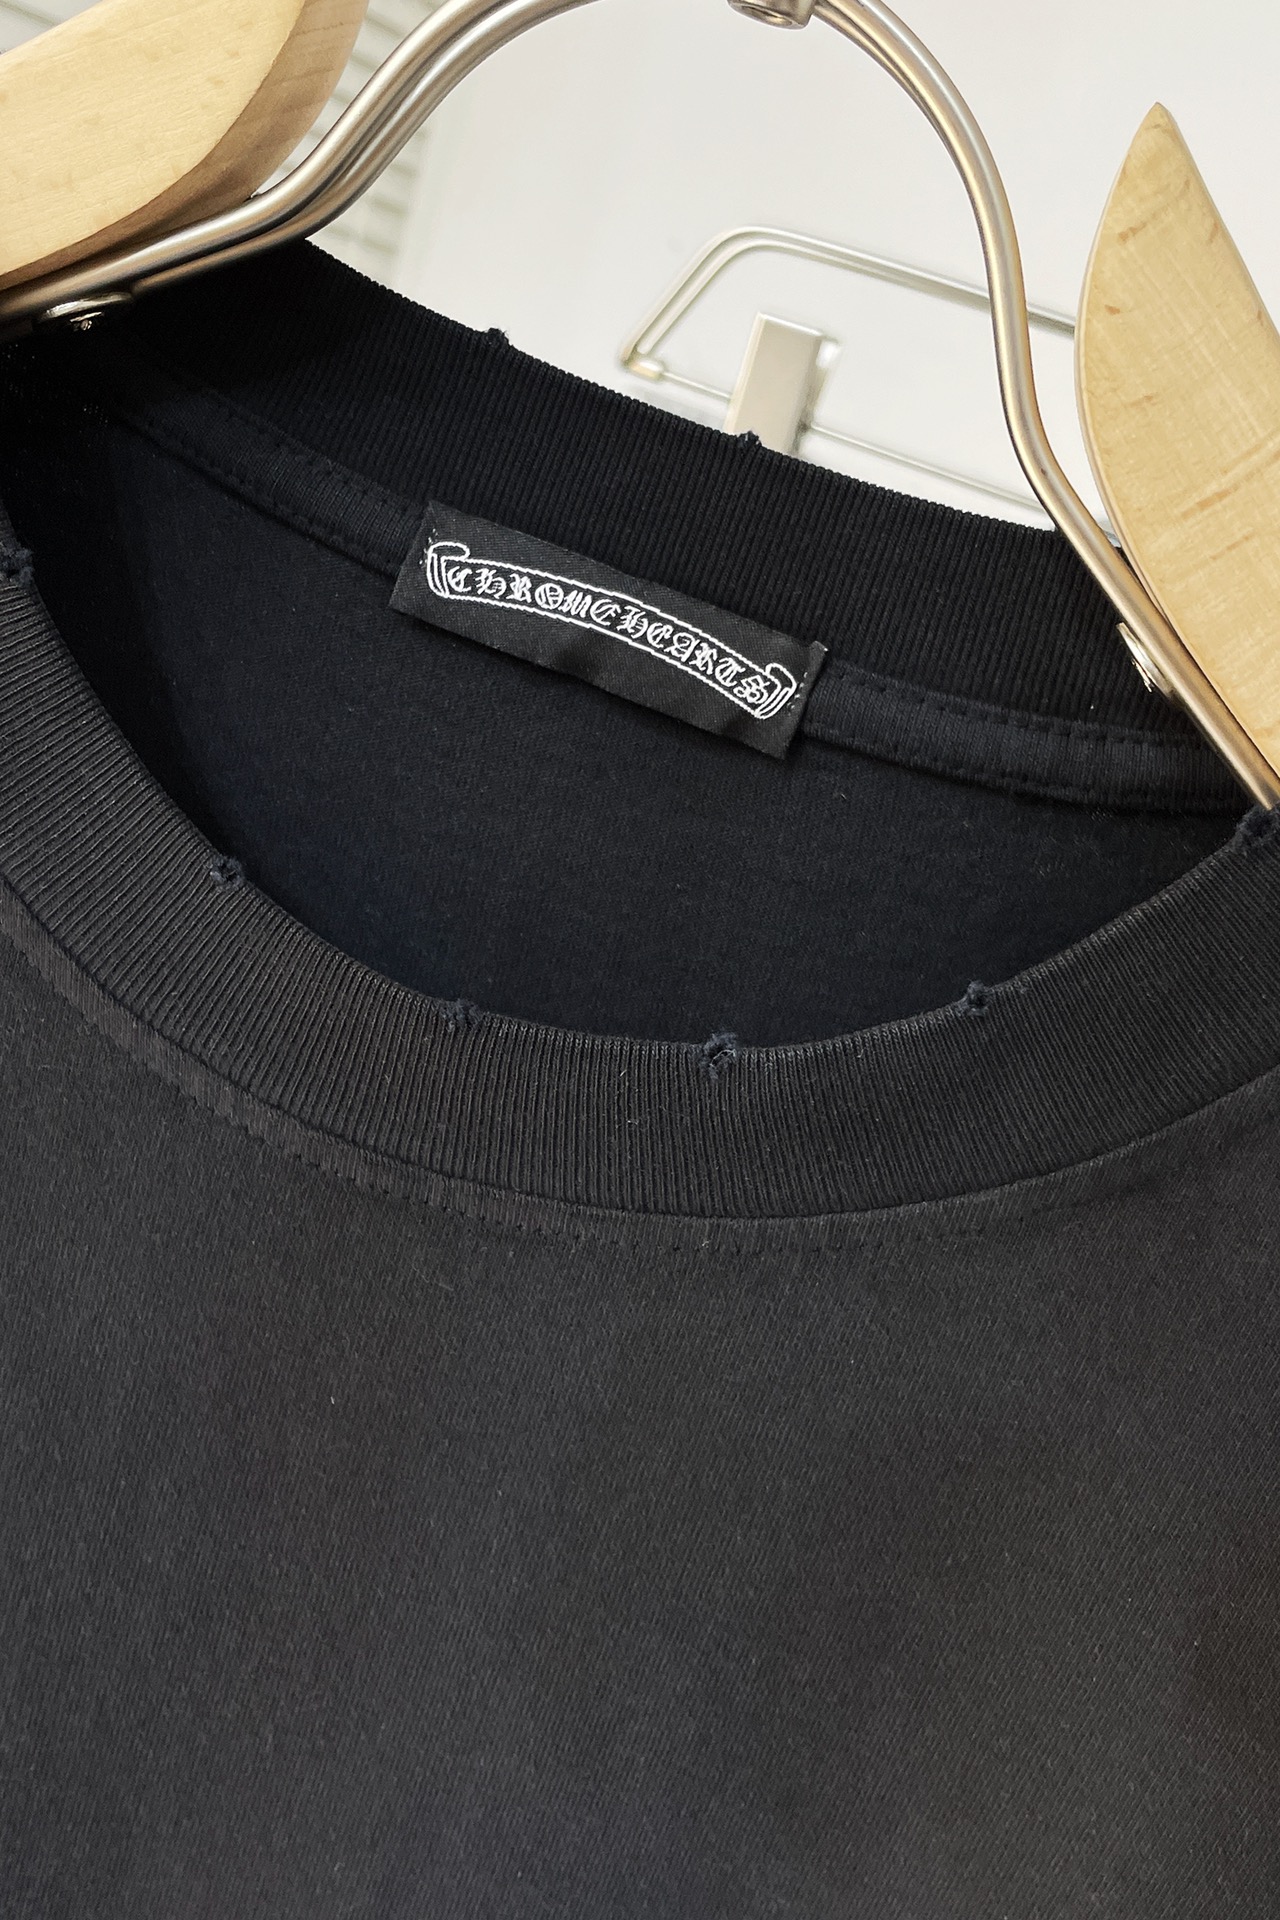 限定販売 クロムハーツtシャツ サイズ感スーパーコピー トップス 純綿 24新品 高級感 シンプル ブラック_4